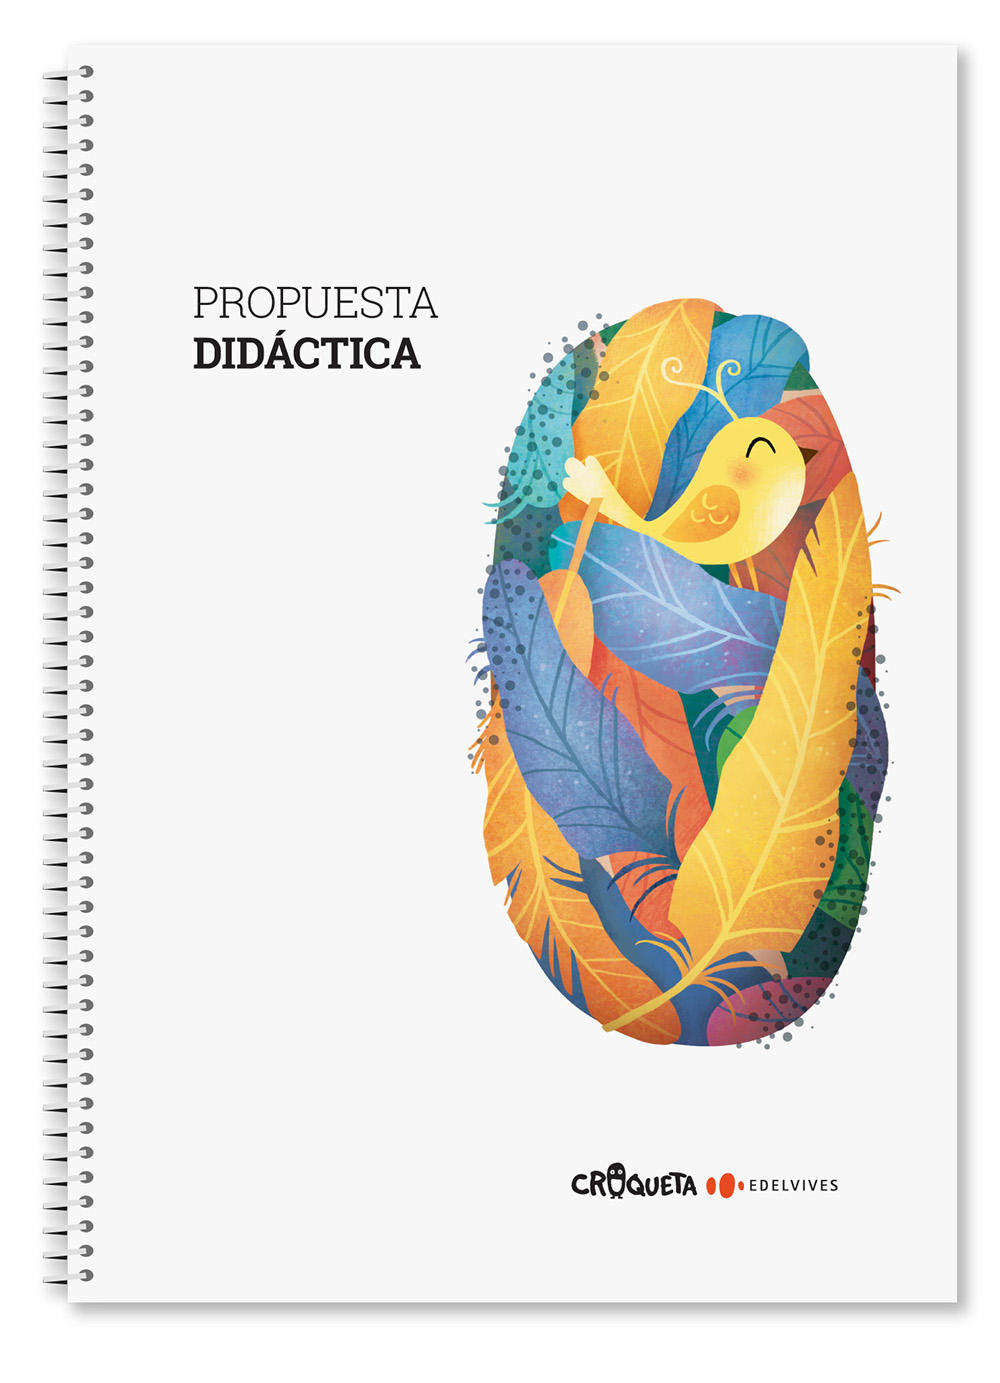 Ficticio_Propuesta_Didactica_Croqueta_0